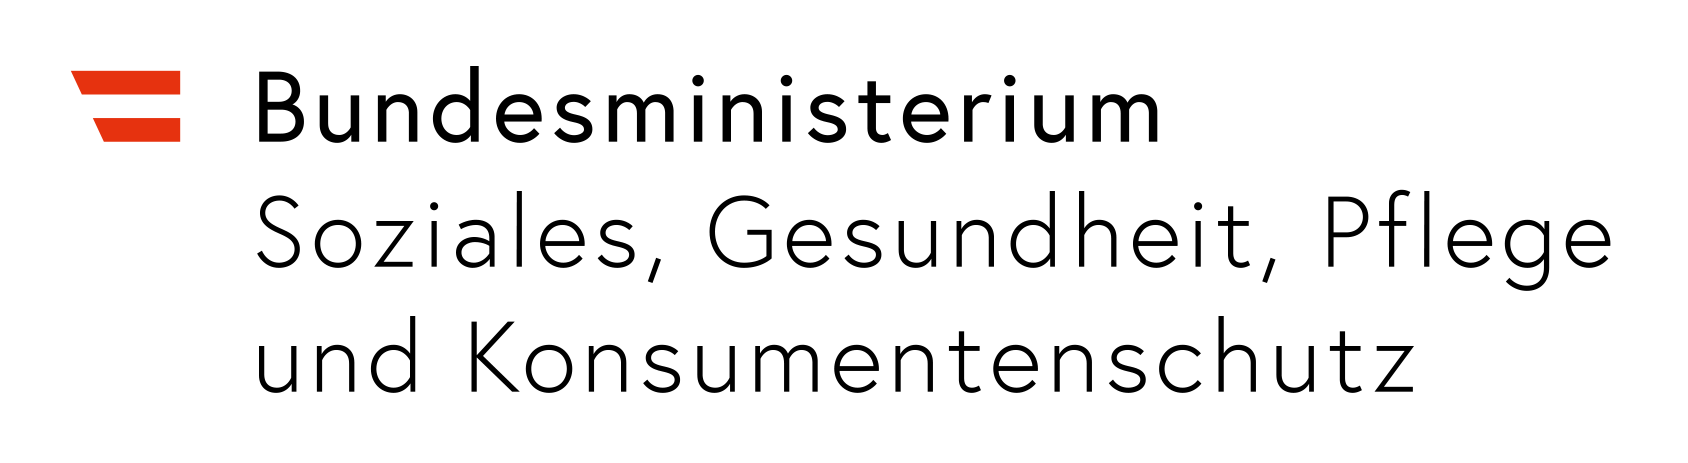 Sozialministerium Logo